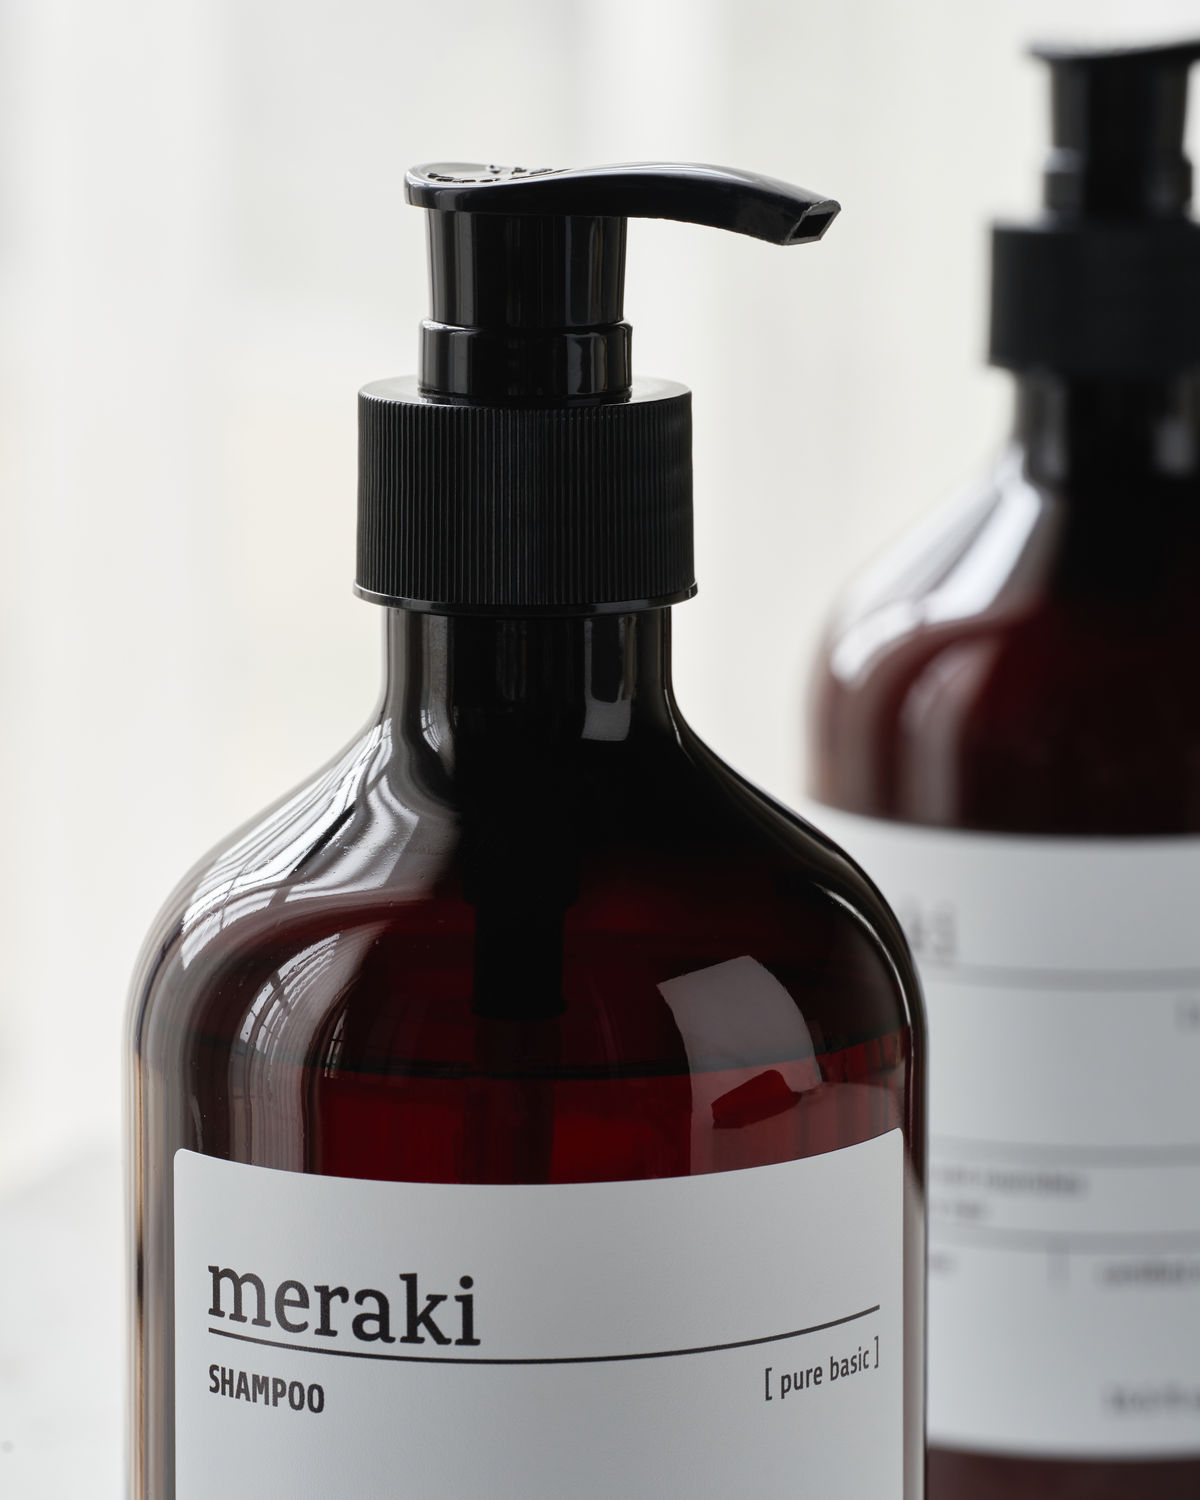 Meraki Shampoo, Pure basic